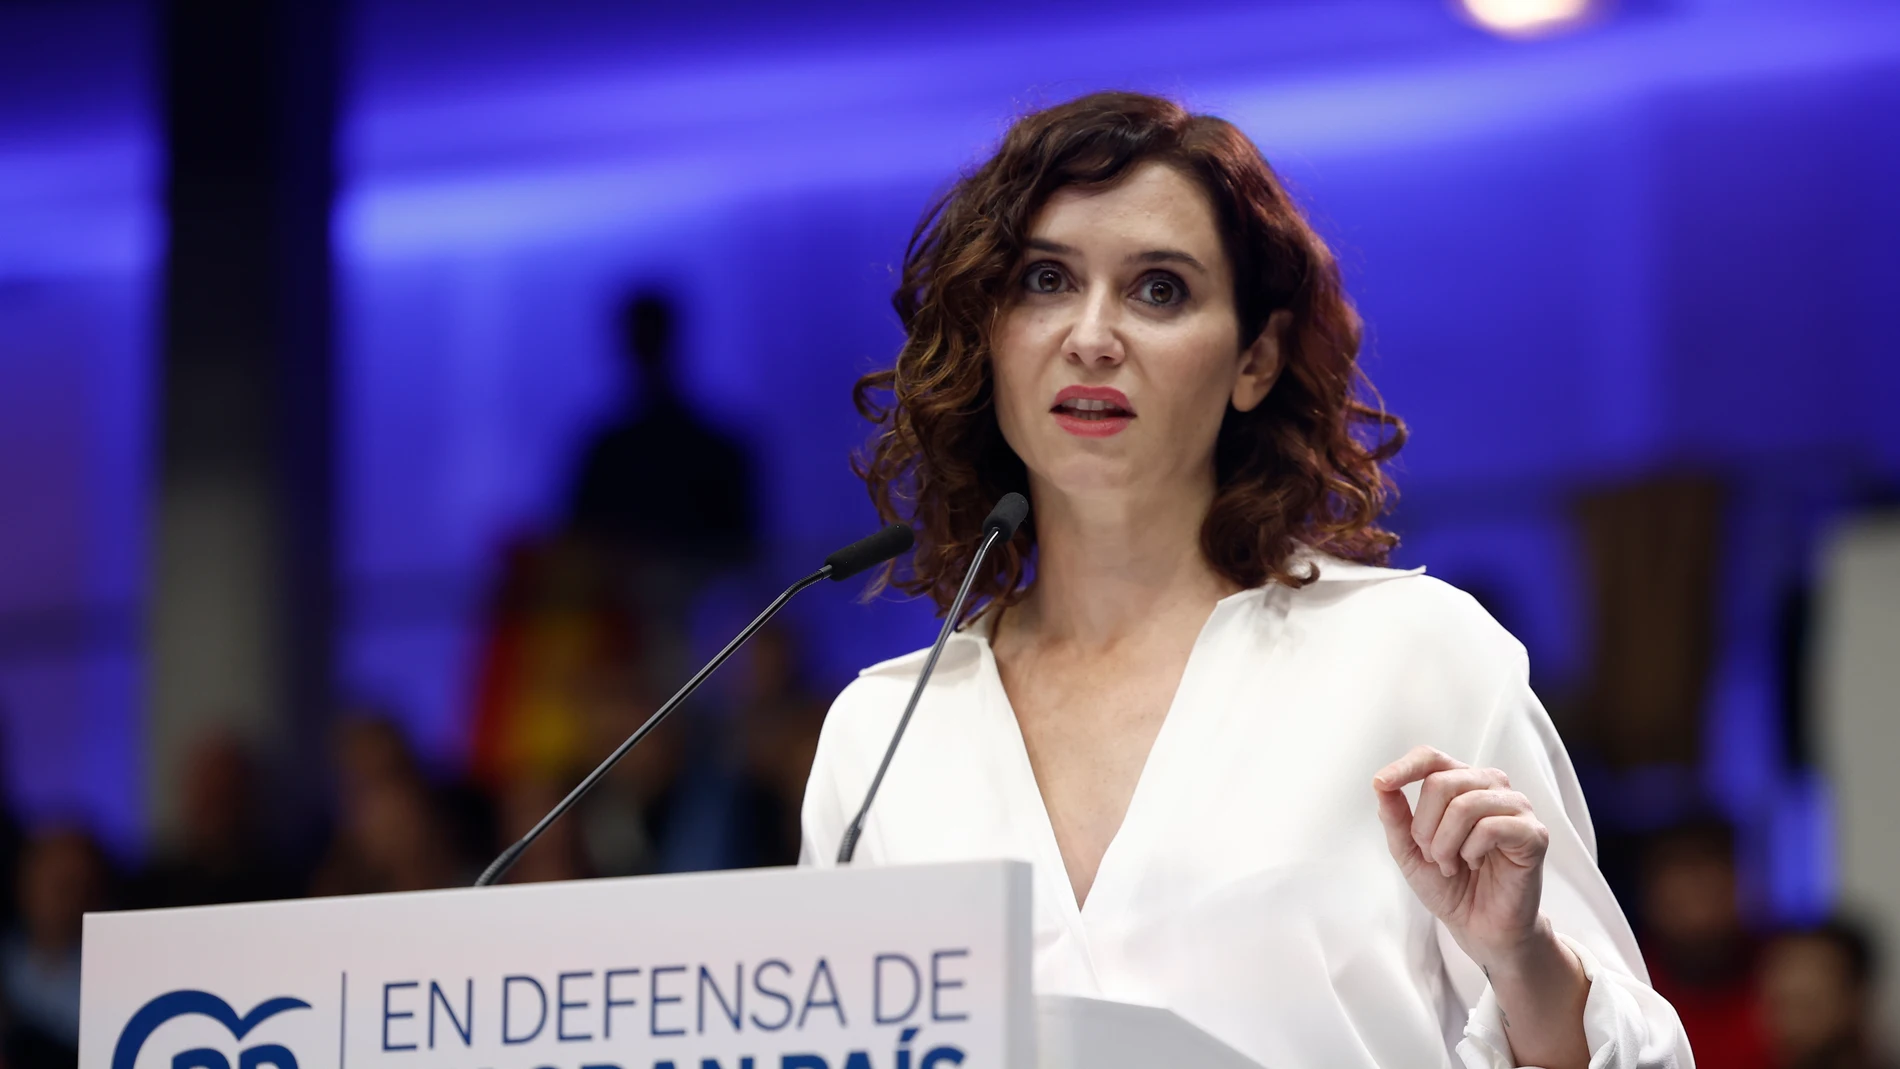 La presidenta de la Comunidad de Madrid, Isabel Díaz Ayuso, interviene en el acto del PP en Madrid